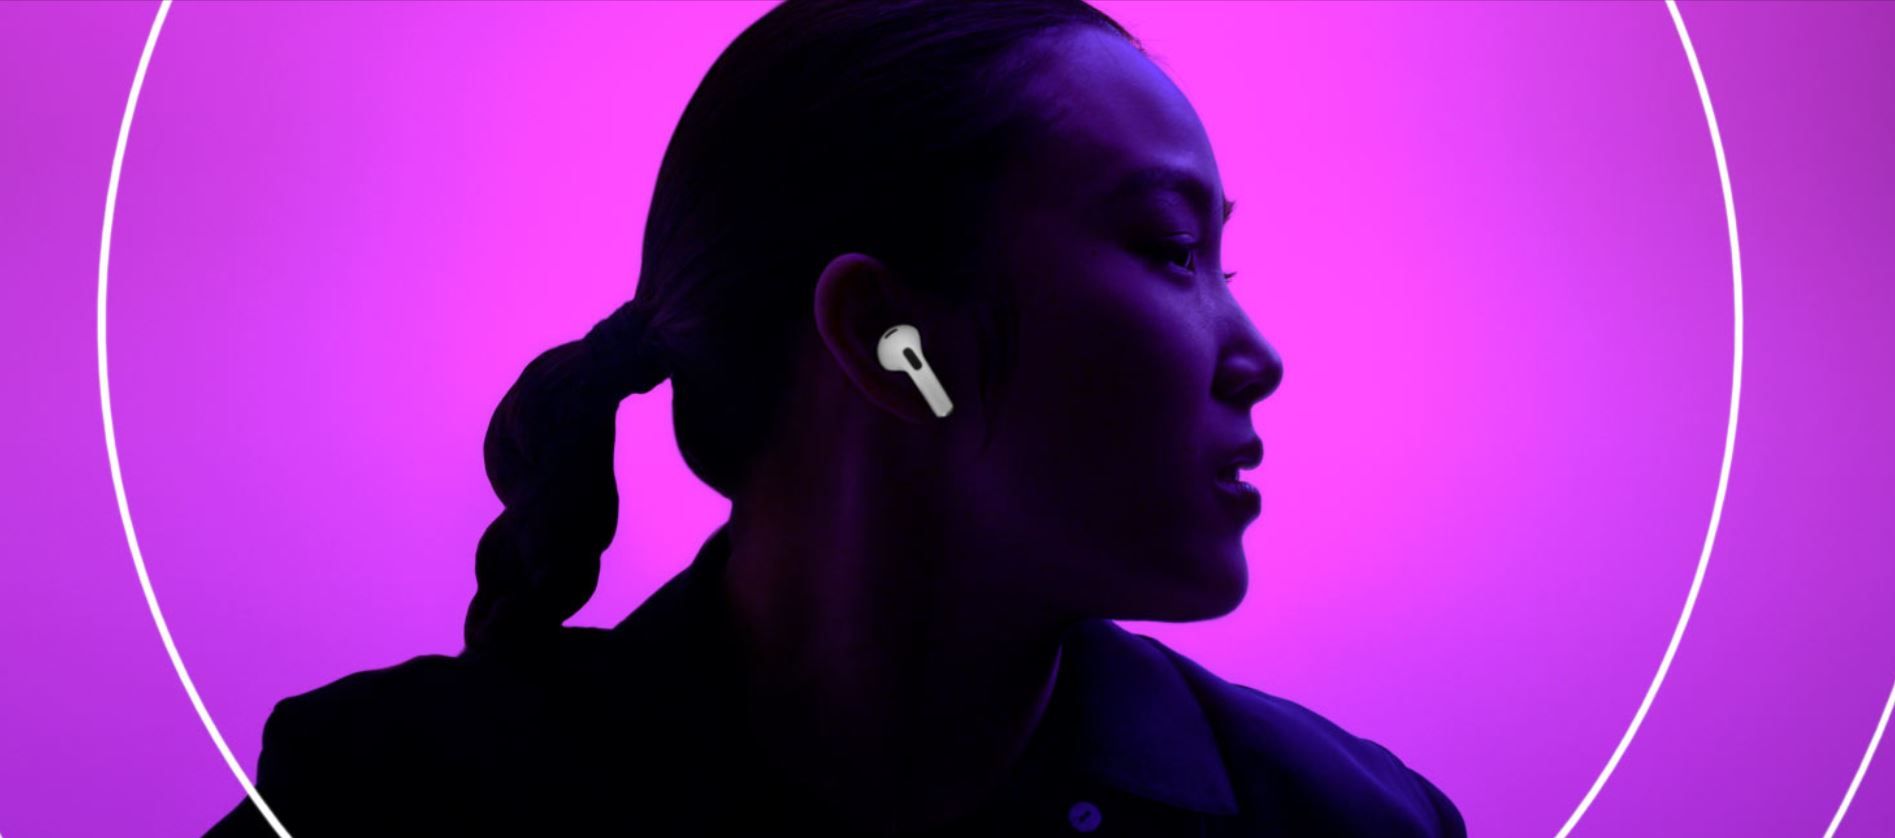  moderní sluchátka do uší apple airpods 3 generace Bluetooth připojení automatické párování s apple zařízeními dotykové ovládání odolná vodě a potu krásný zvuk 